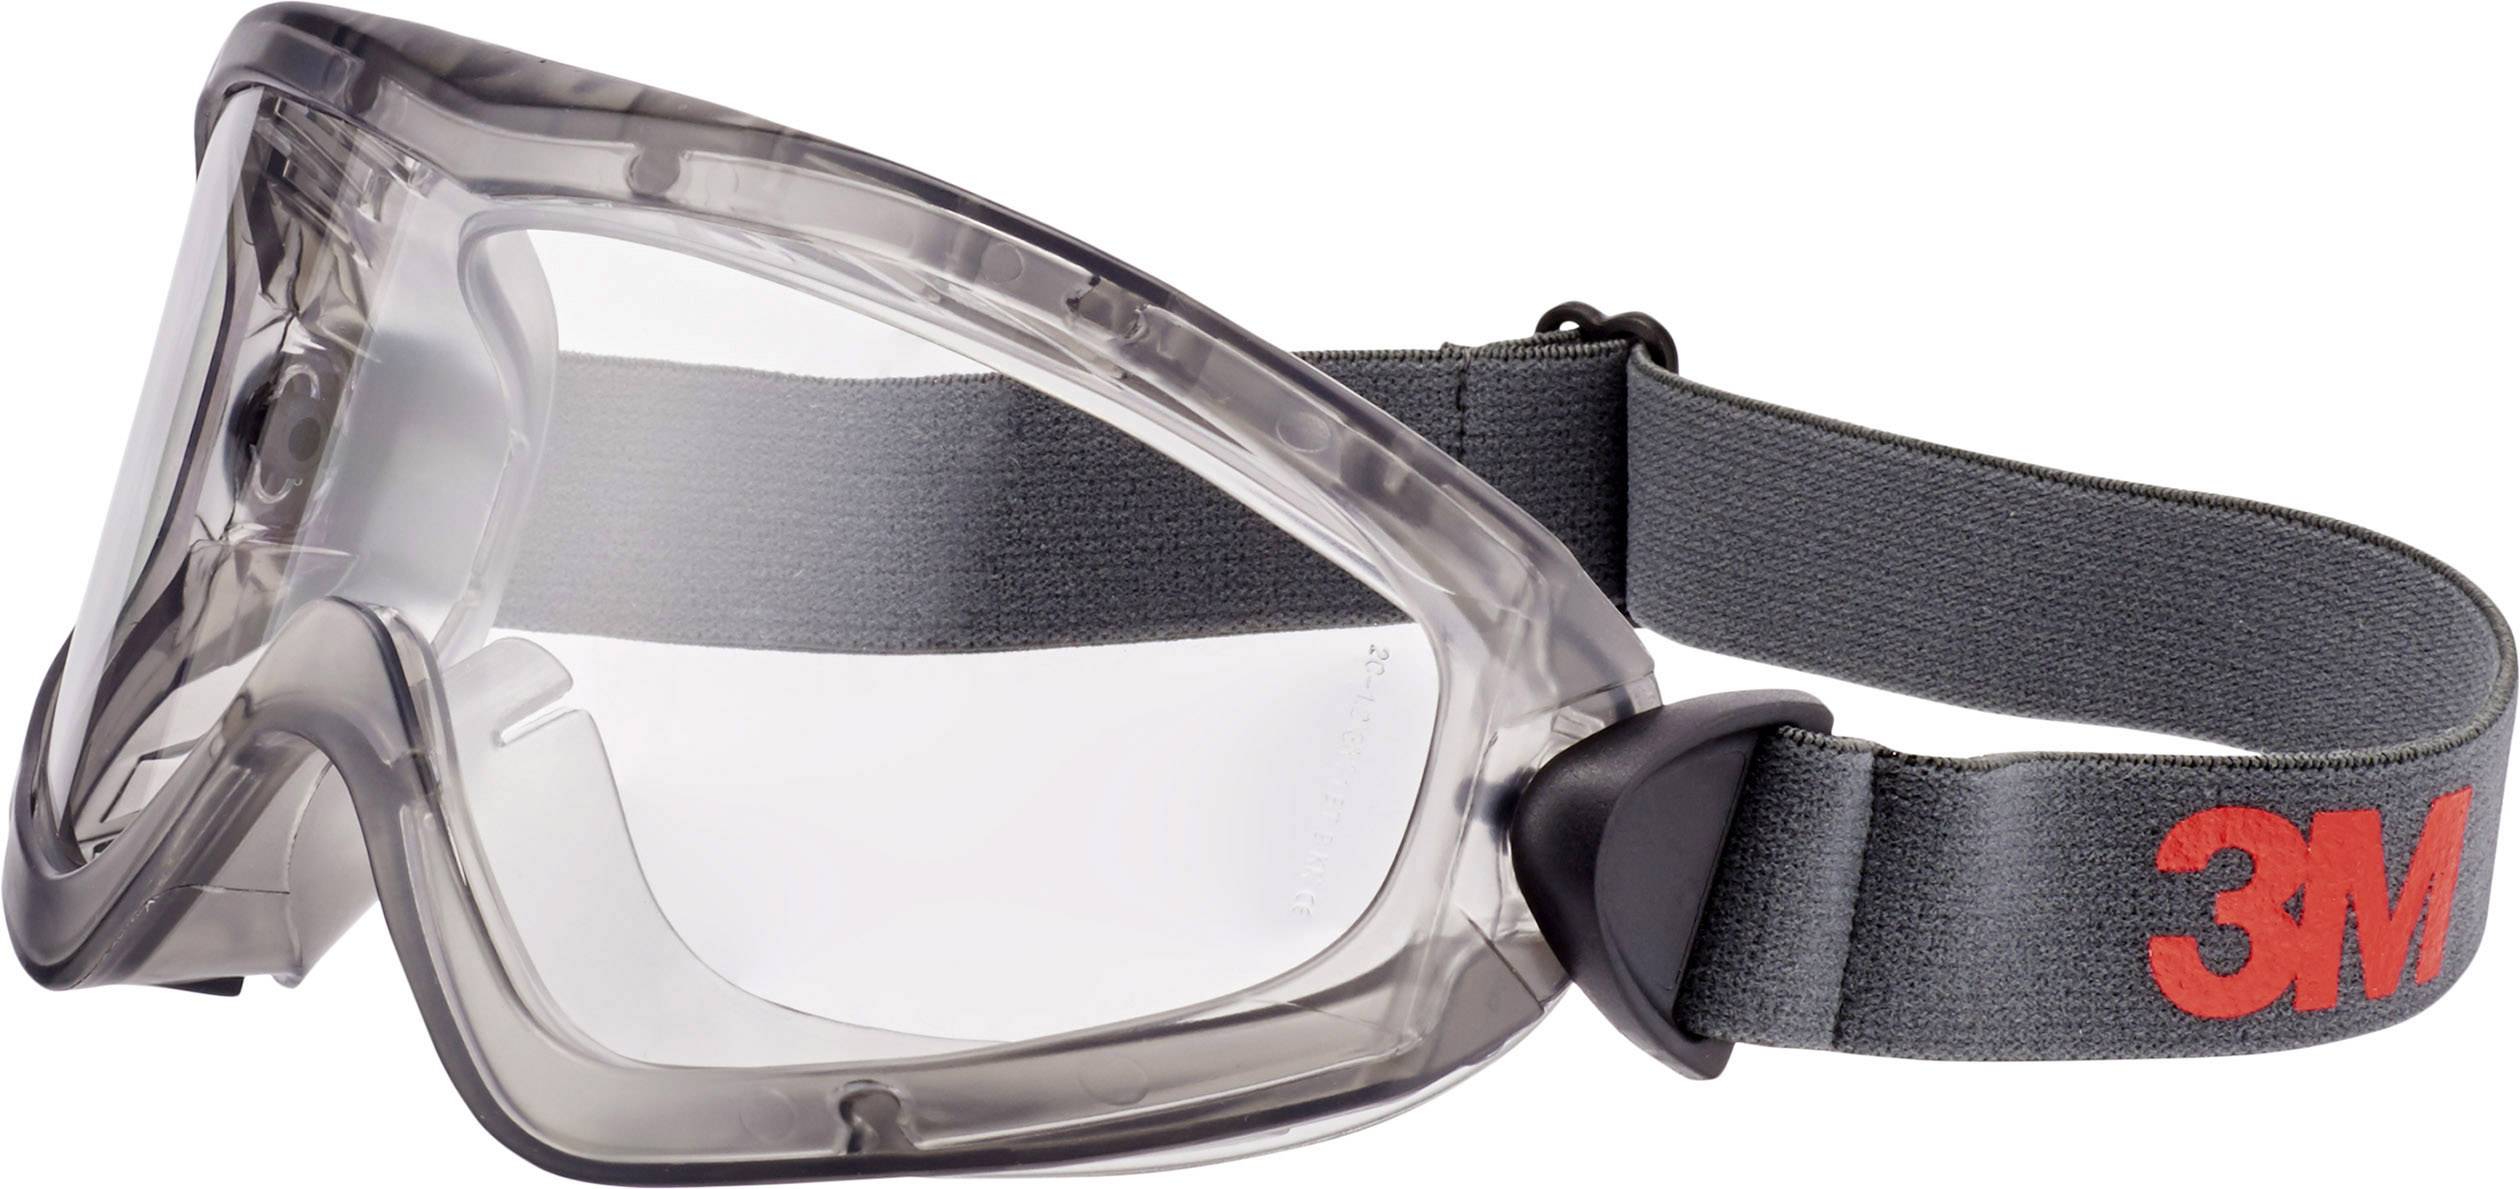 3M Vollsichtbrille inkl. Antibeschlag-Schutz 2891-SG Grau (2891-SG)